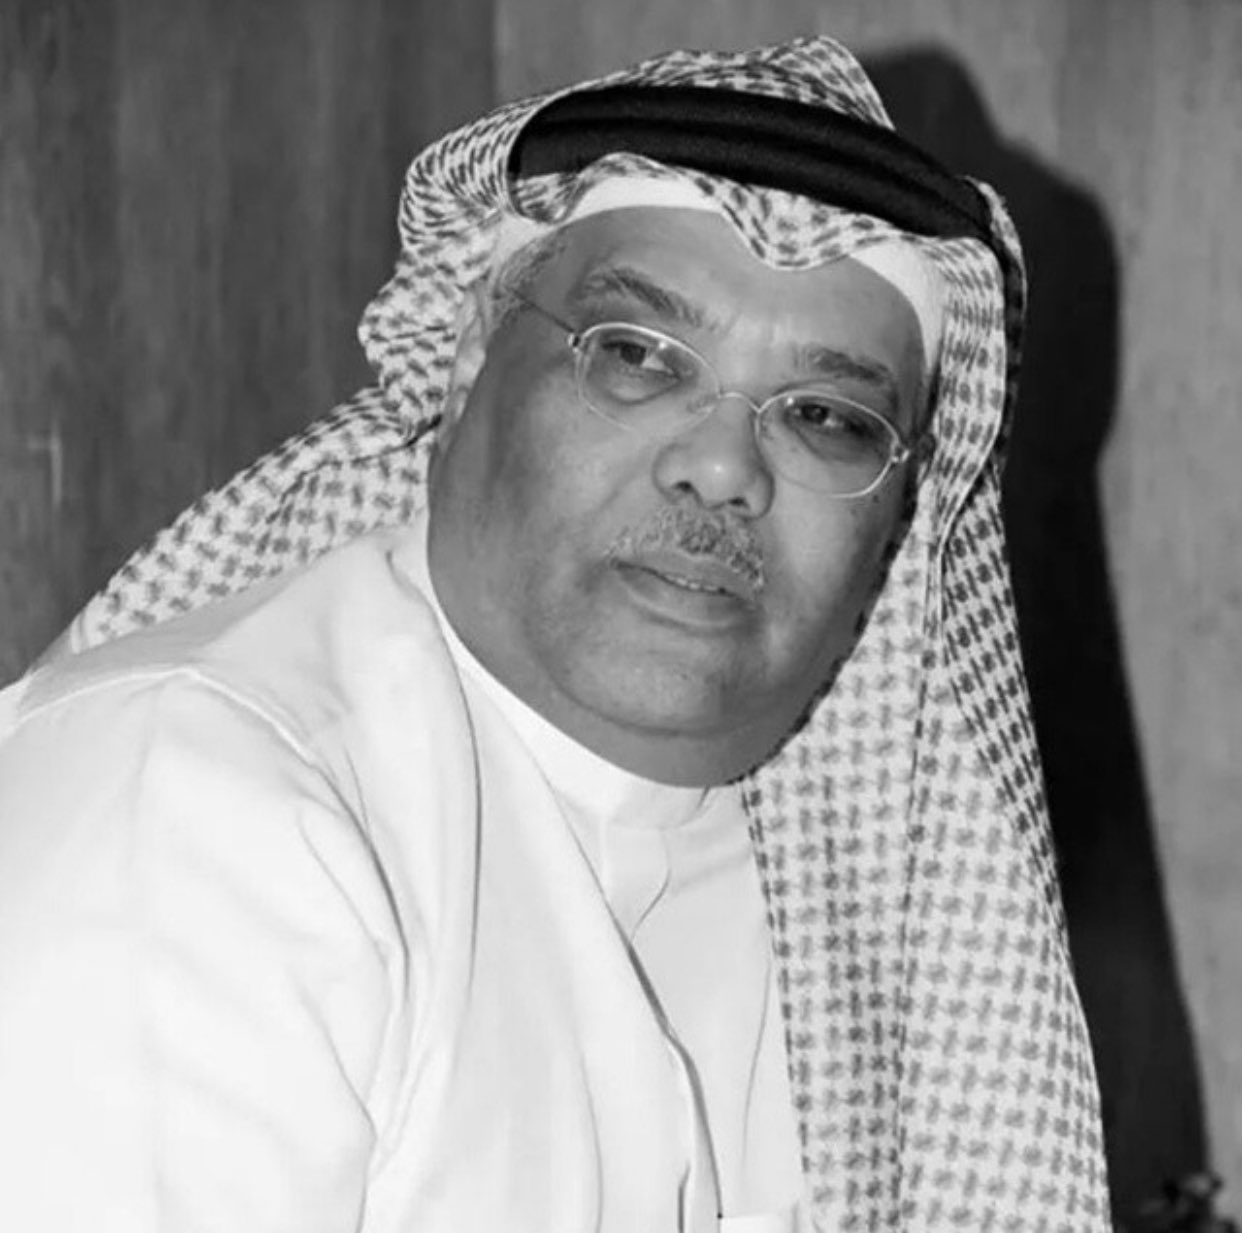 وفاة الملحن طلال باغر أحد الأسماء المهمة في المشهد الفني السعودي